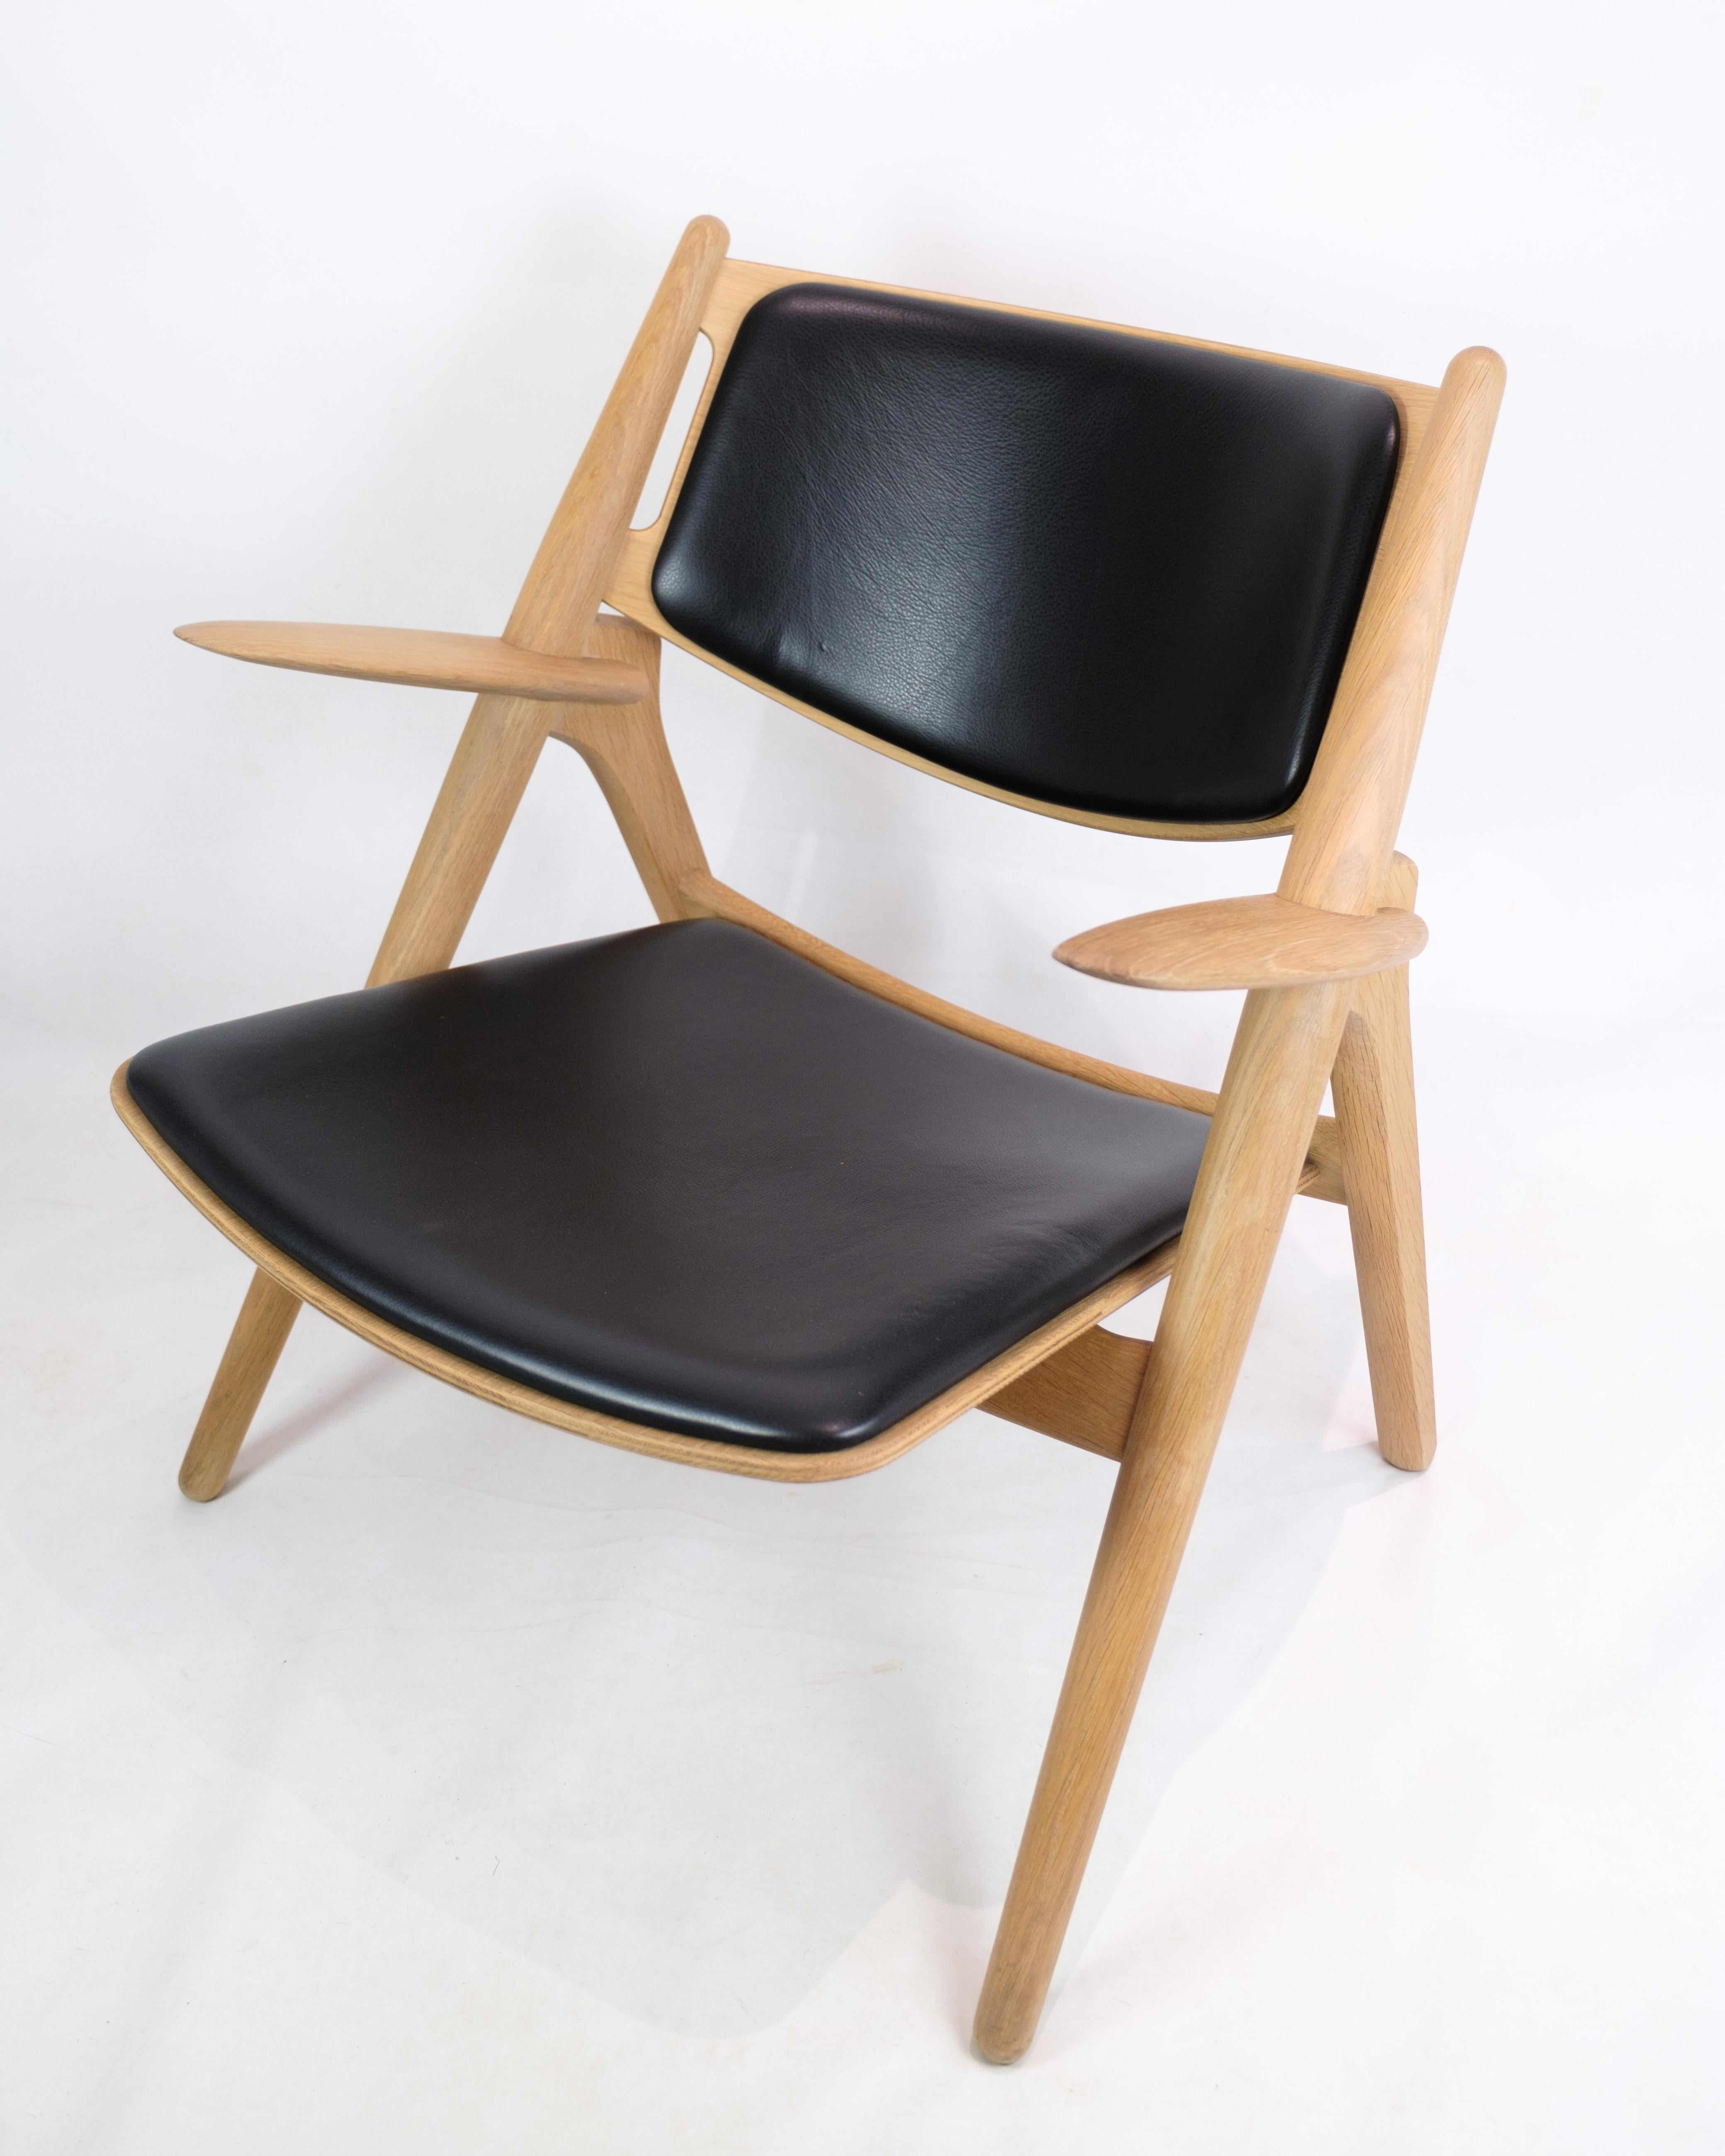 Le fauteuil, modèle CH28, représente une rencontre sublime entre fonctionnalité et esthétique, créé par le célèbre designer Hans J. Wegner et produit par Carl Hansen & Søn. Fabriquée en chêne massif, cette édition spéciale est magnifiquement